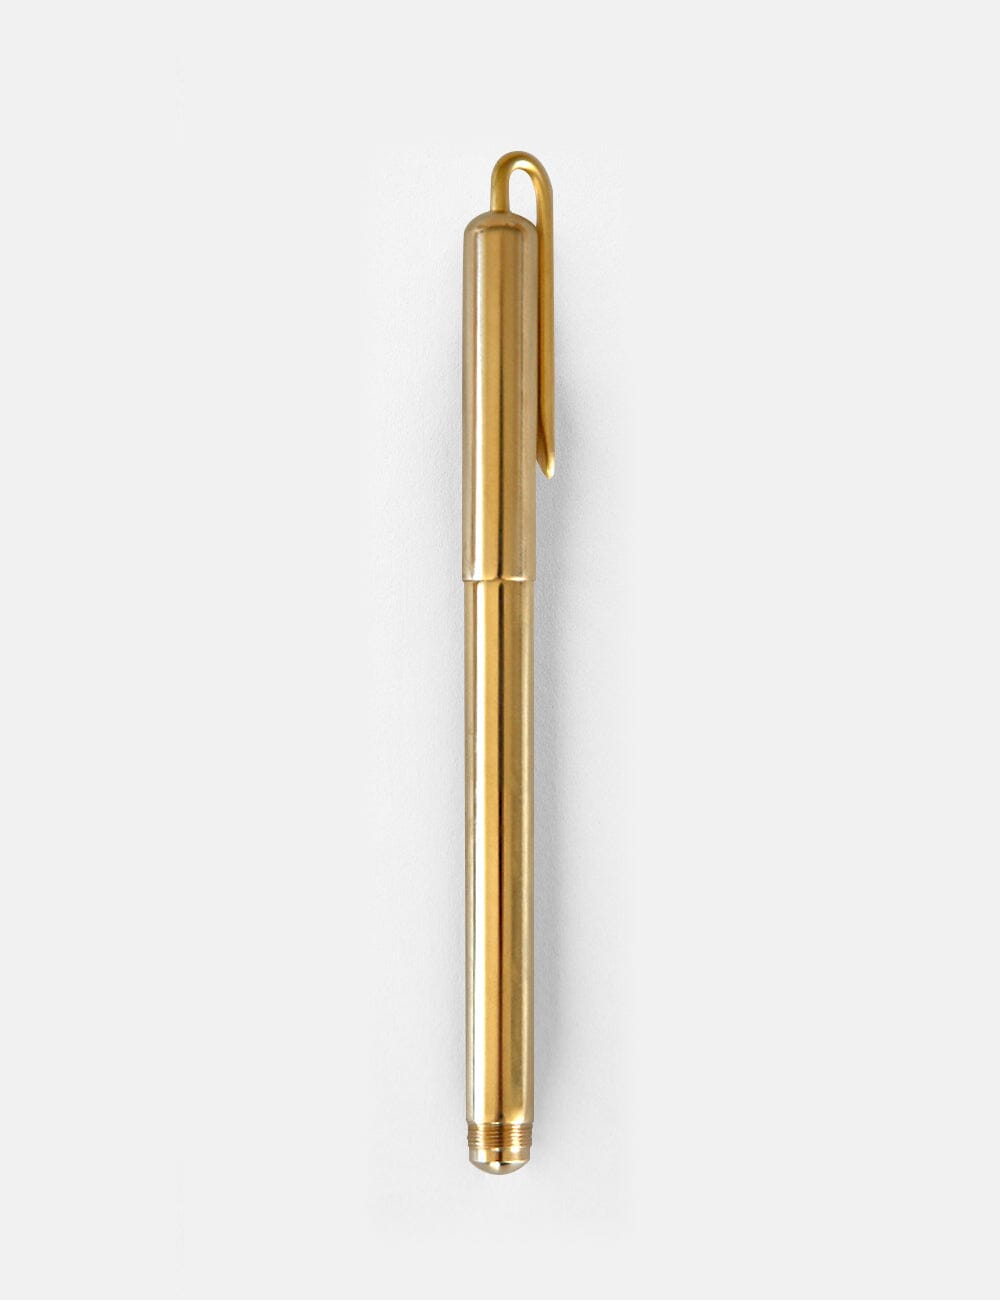 Bespoke Letterpress Solid Brass Pen